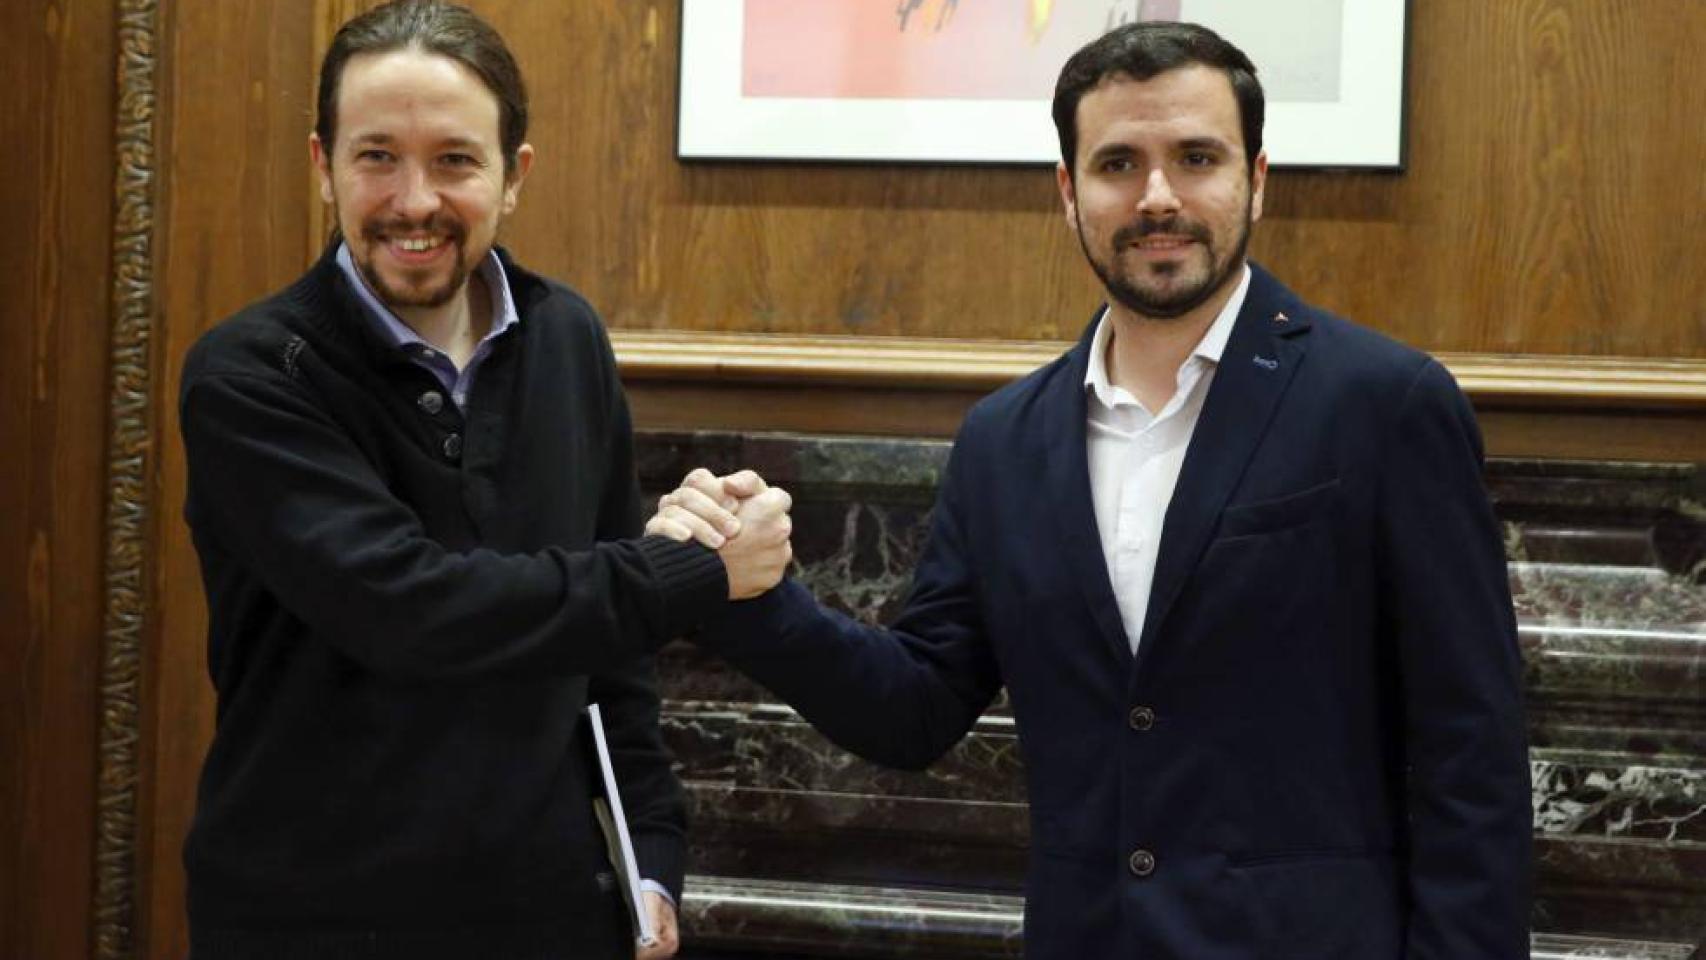 El País acusa a laSexta de apoyar el populismo radical de Unidos Podemos